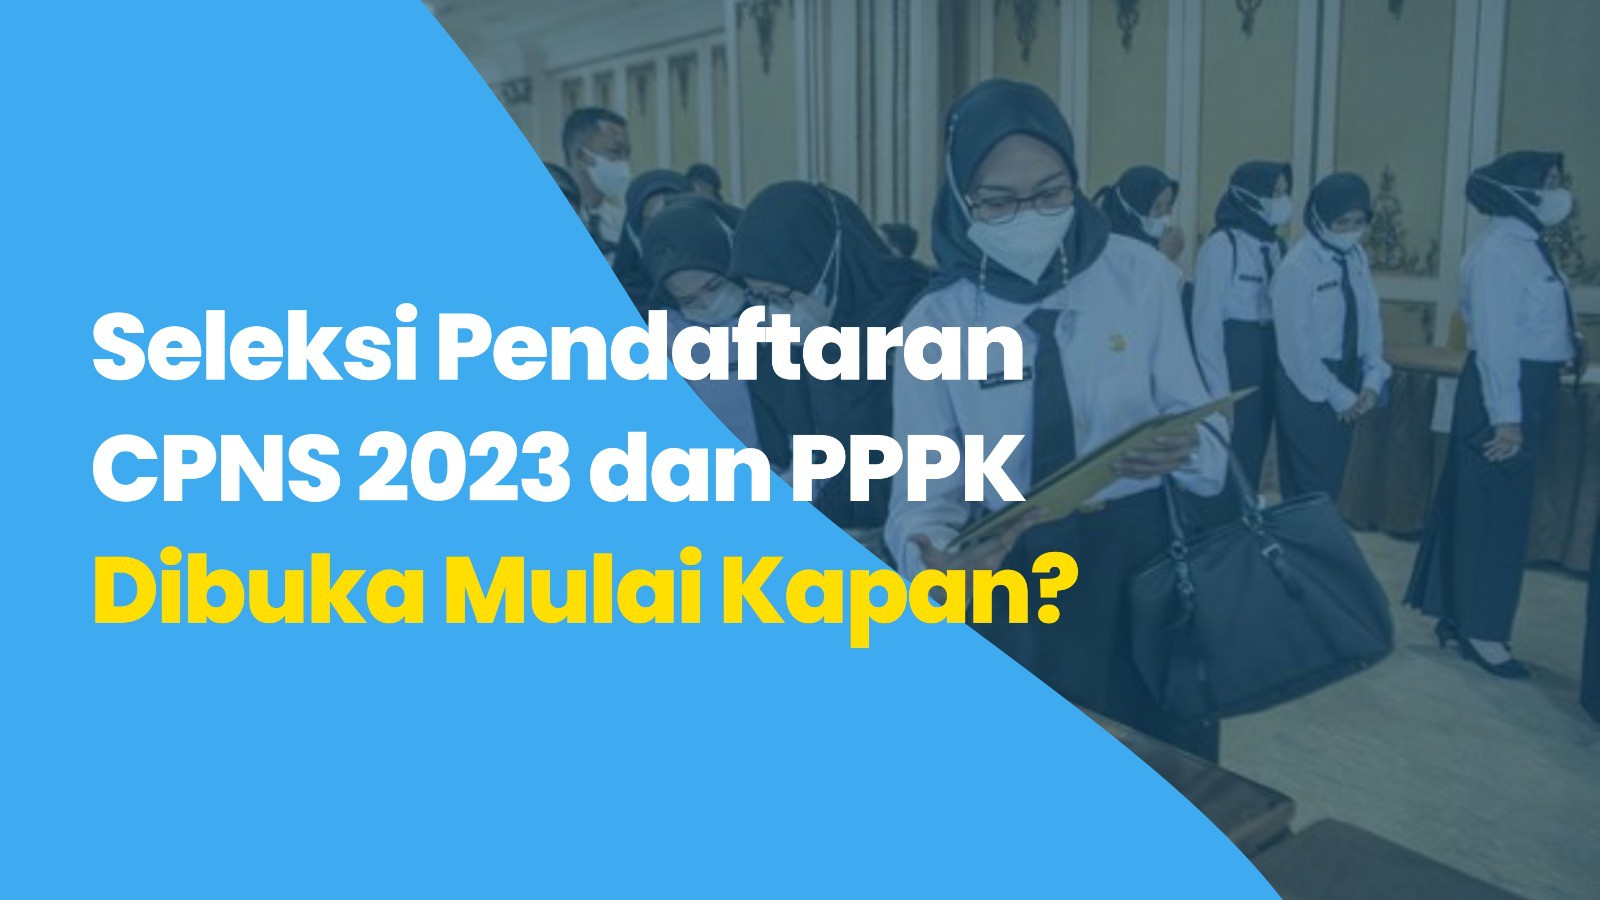 Seleksi Pendaftaran CPNS 2023 dan PPPK Dibuka Mulai Kapan ?